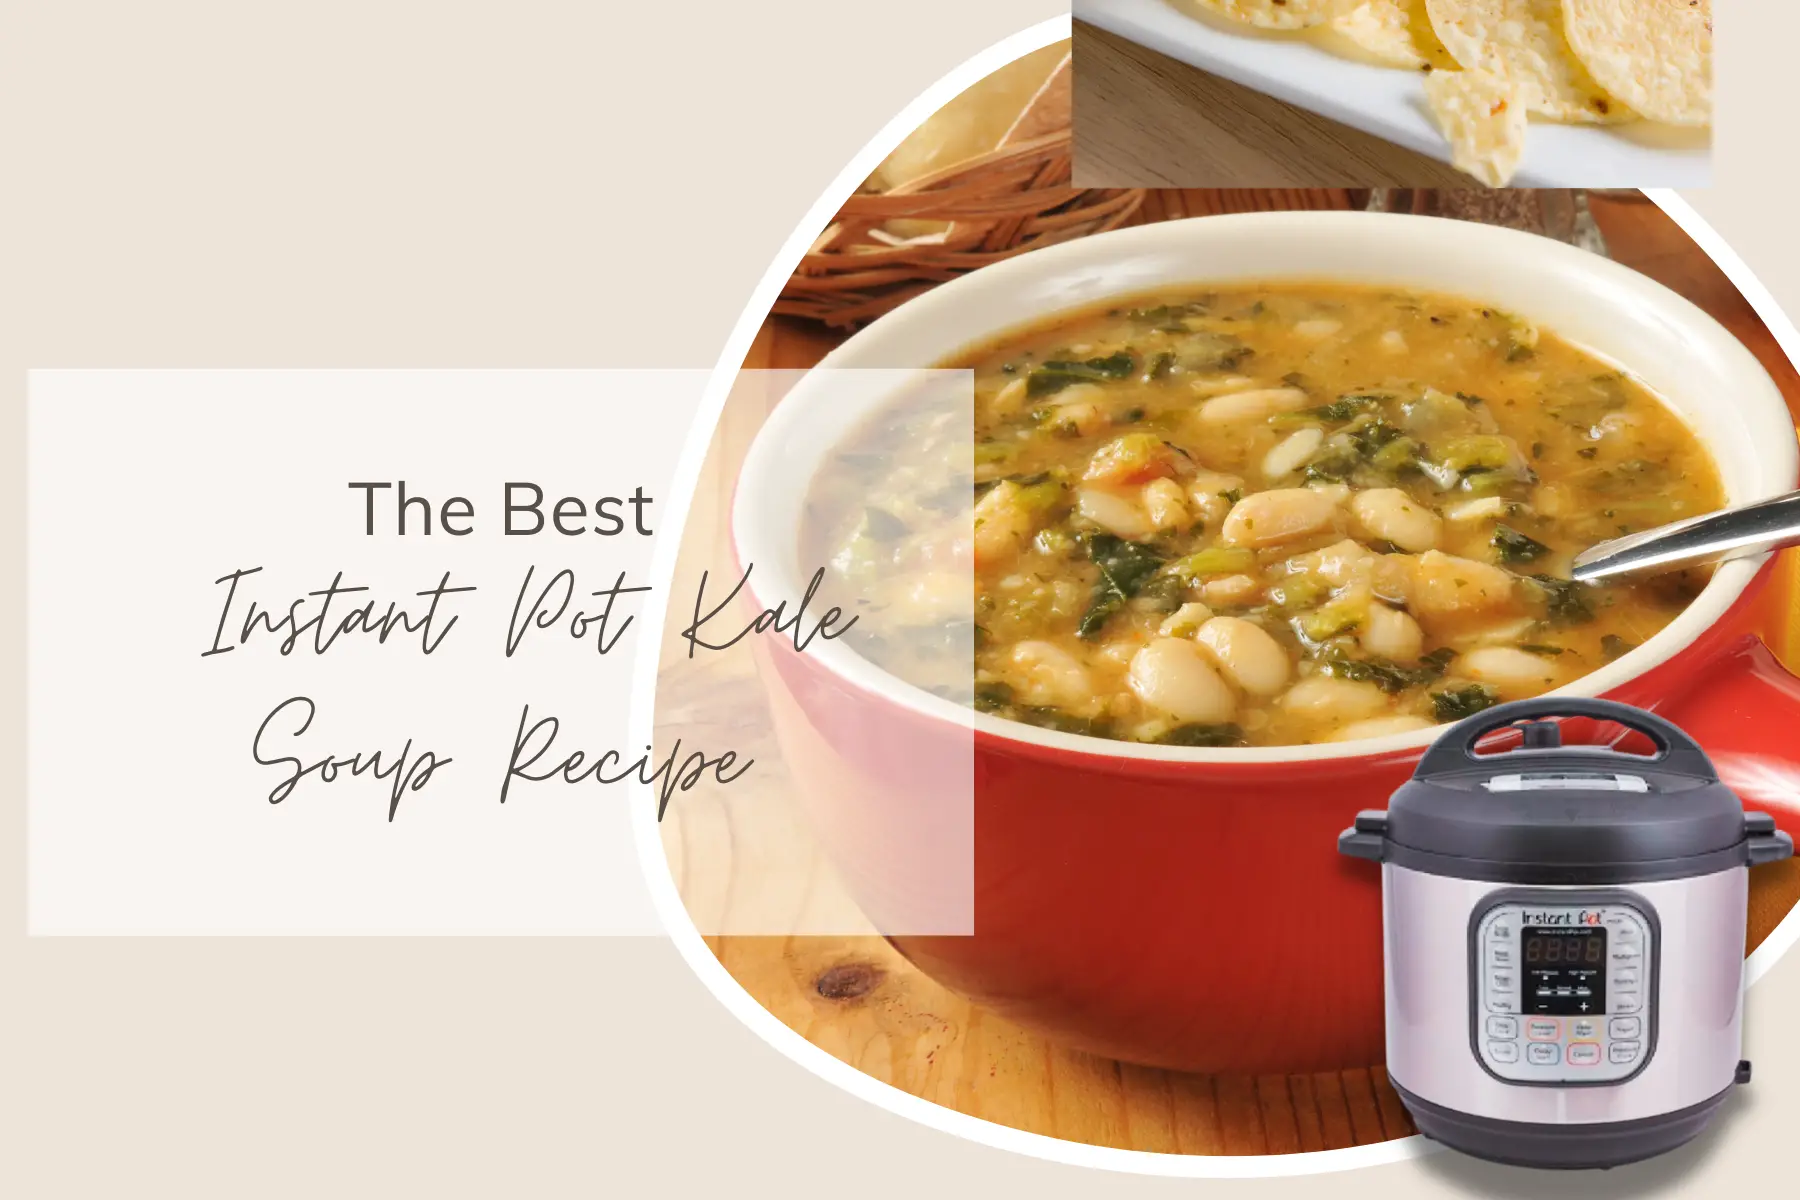 The Best Instant Pot Kale Soup Recipe